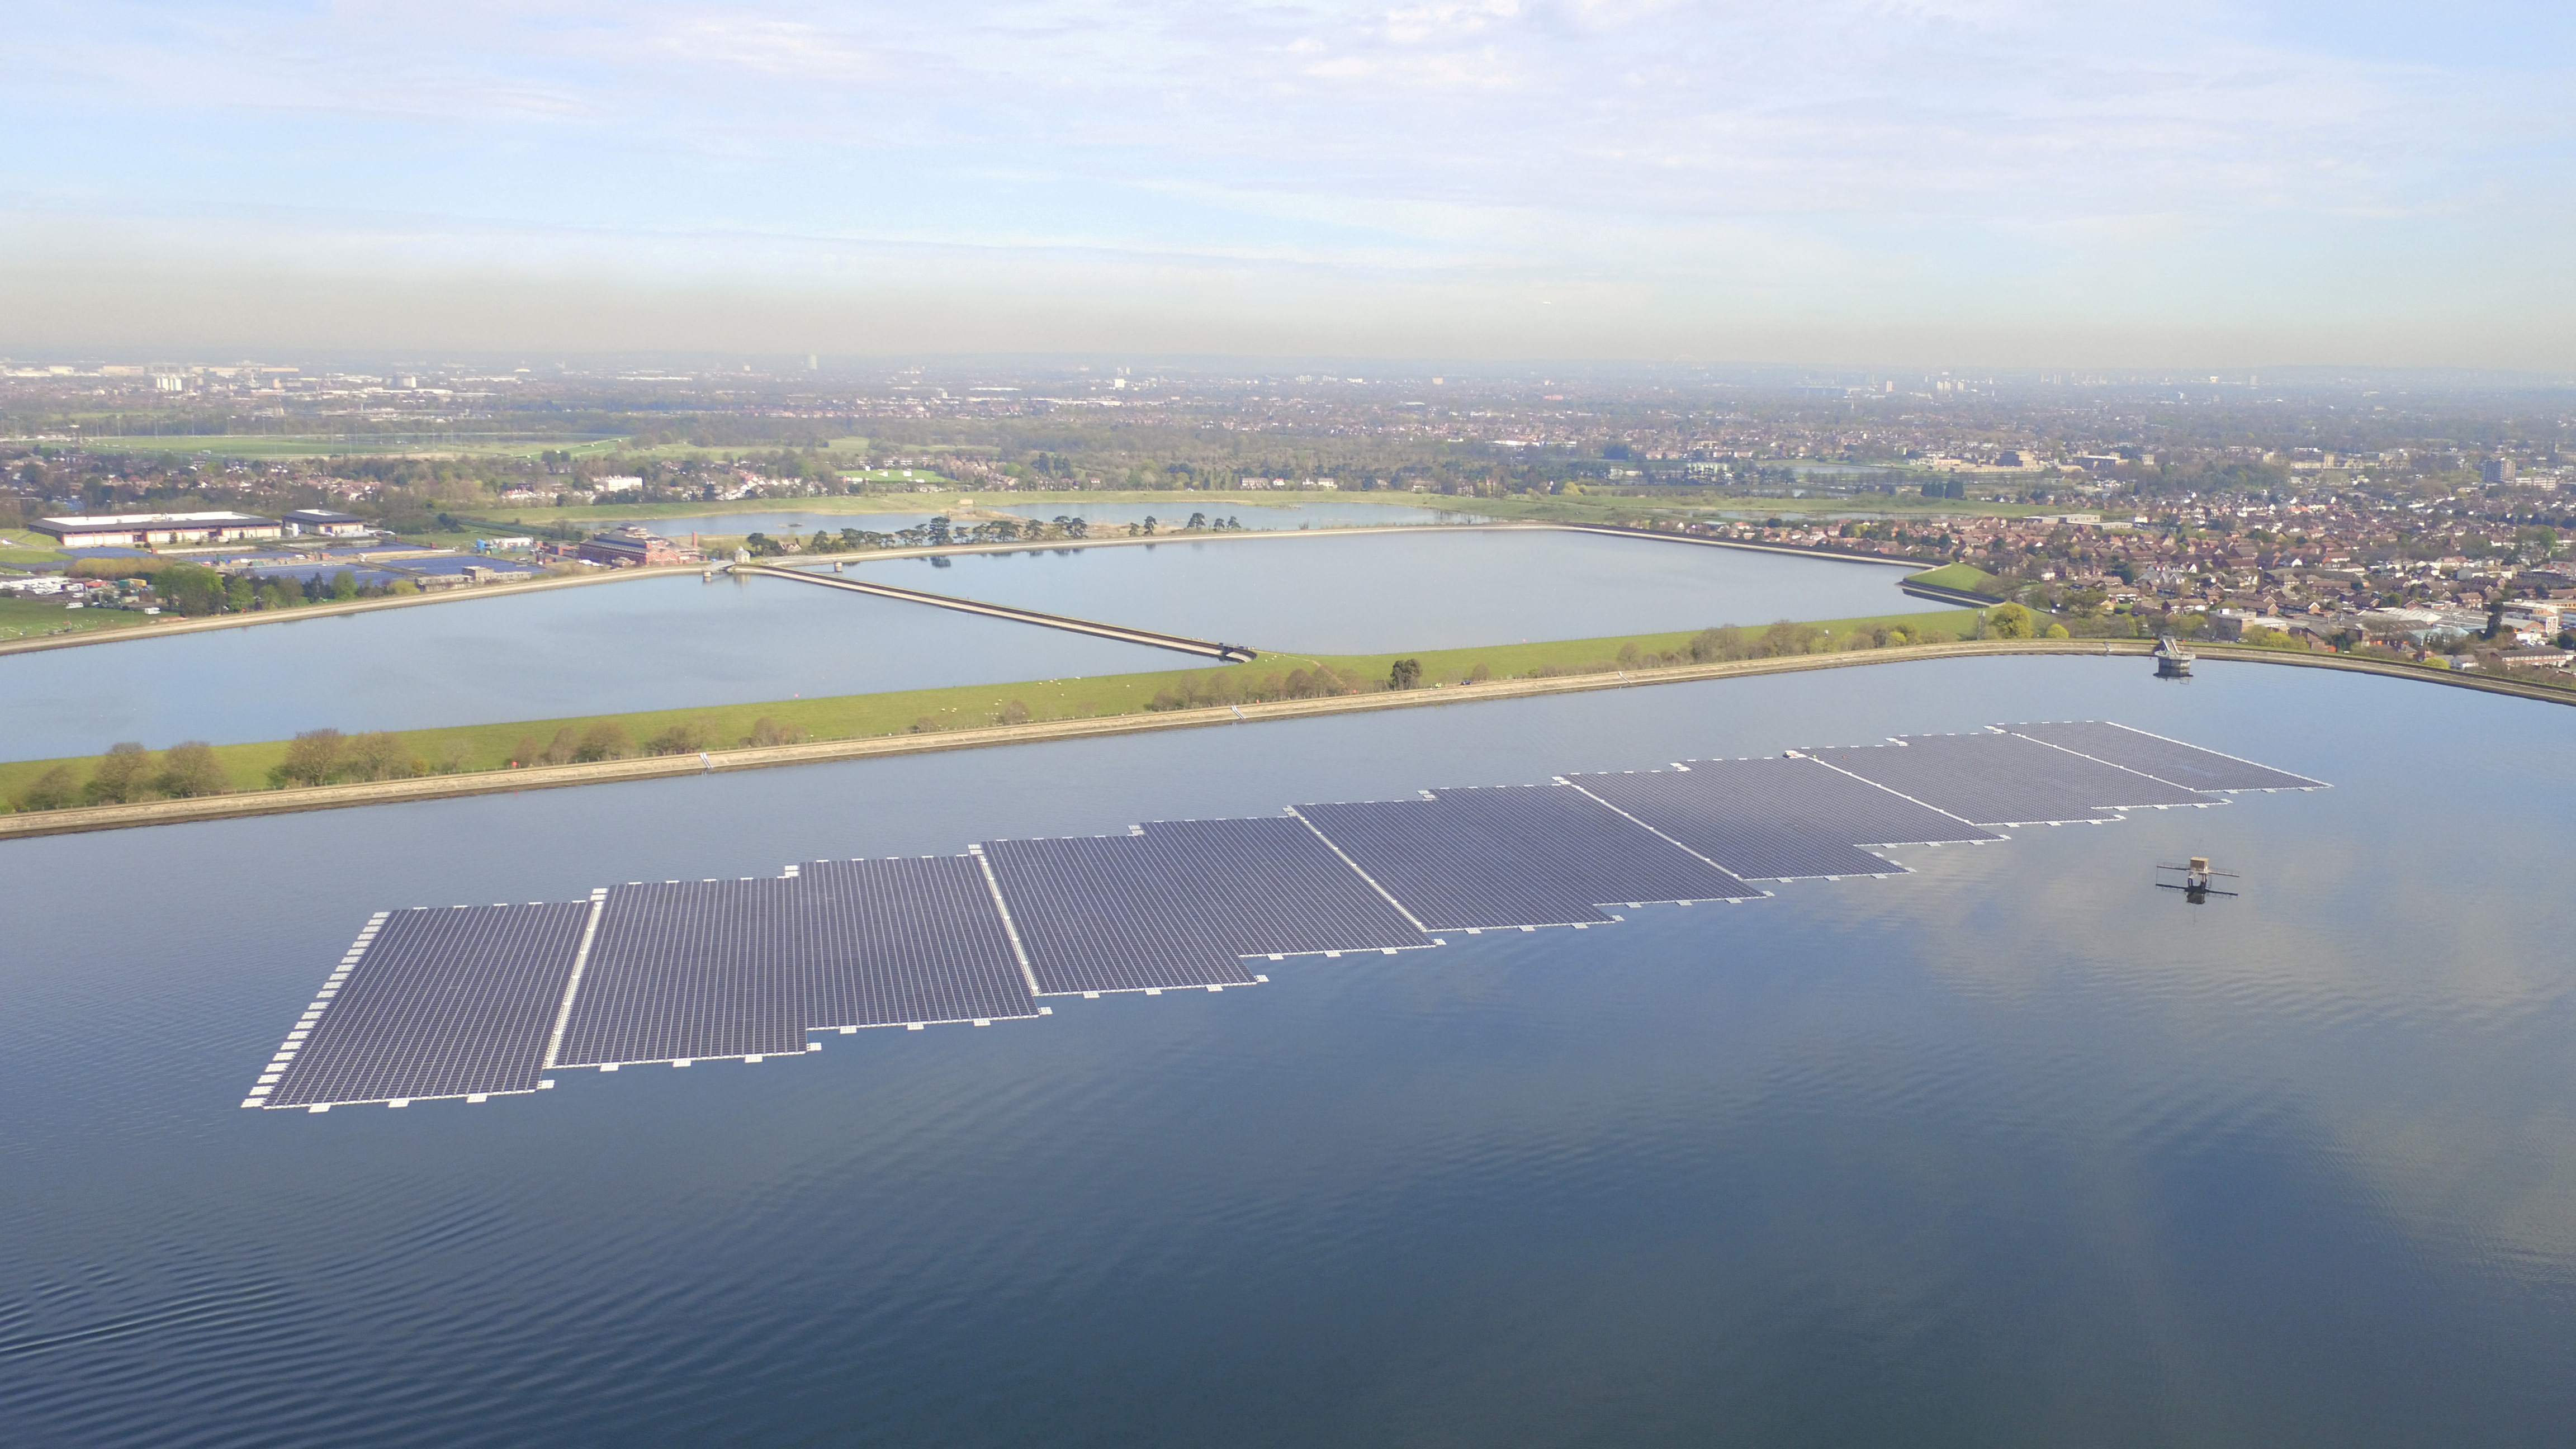 Lightsource BP's floating installation is seen at the Queen Elizabeth II Reservoir